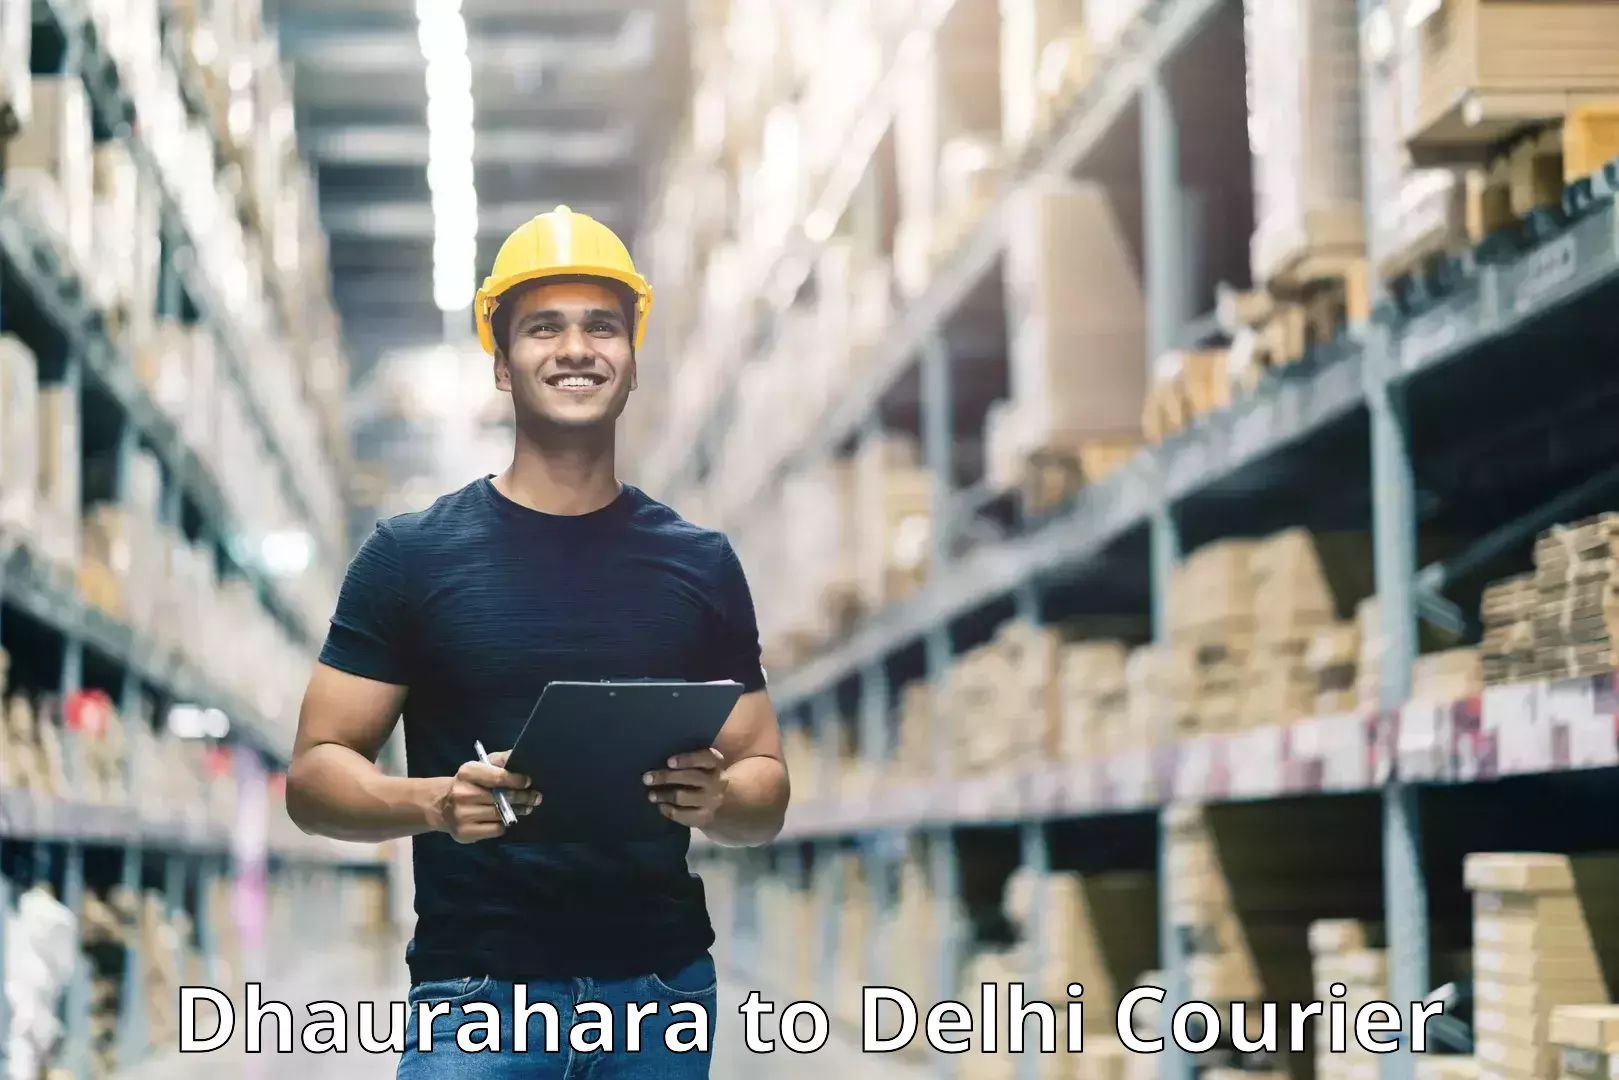 Express courier capabilities Dhaurahara to Jamia Millia Islamia New Delhi